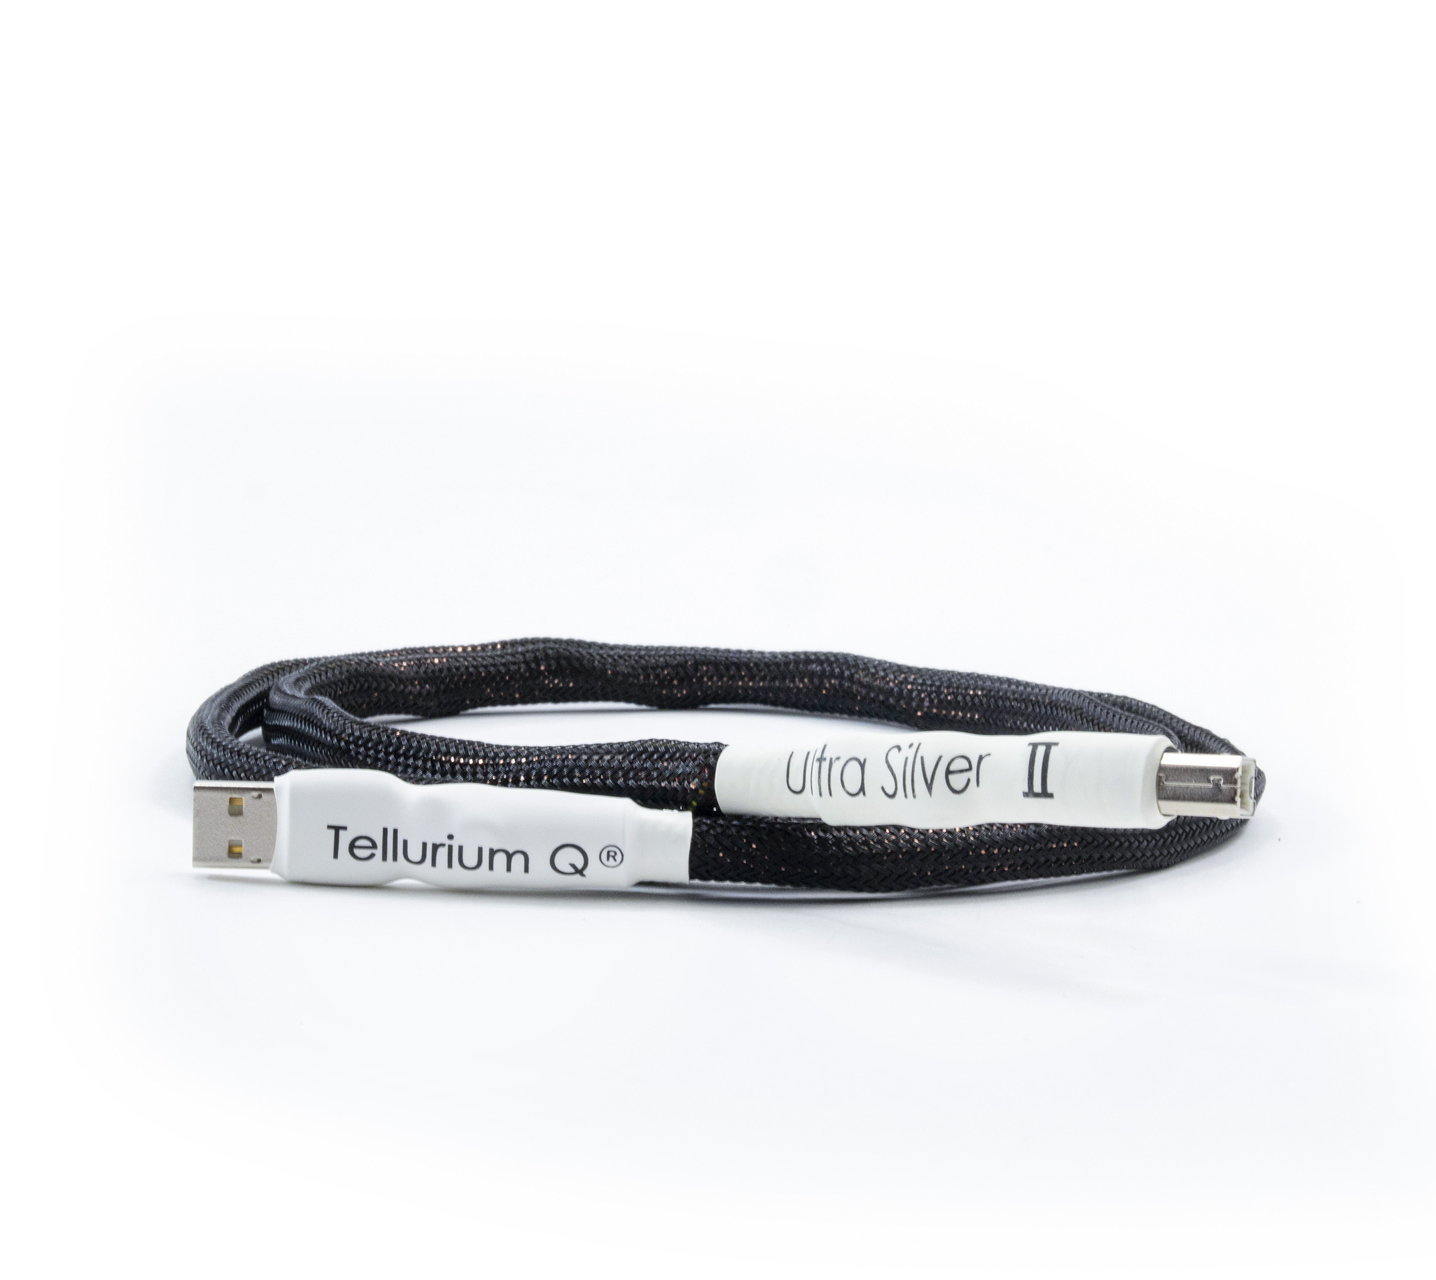 Tellurium Q | Ultra Silver II | USB